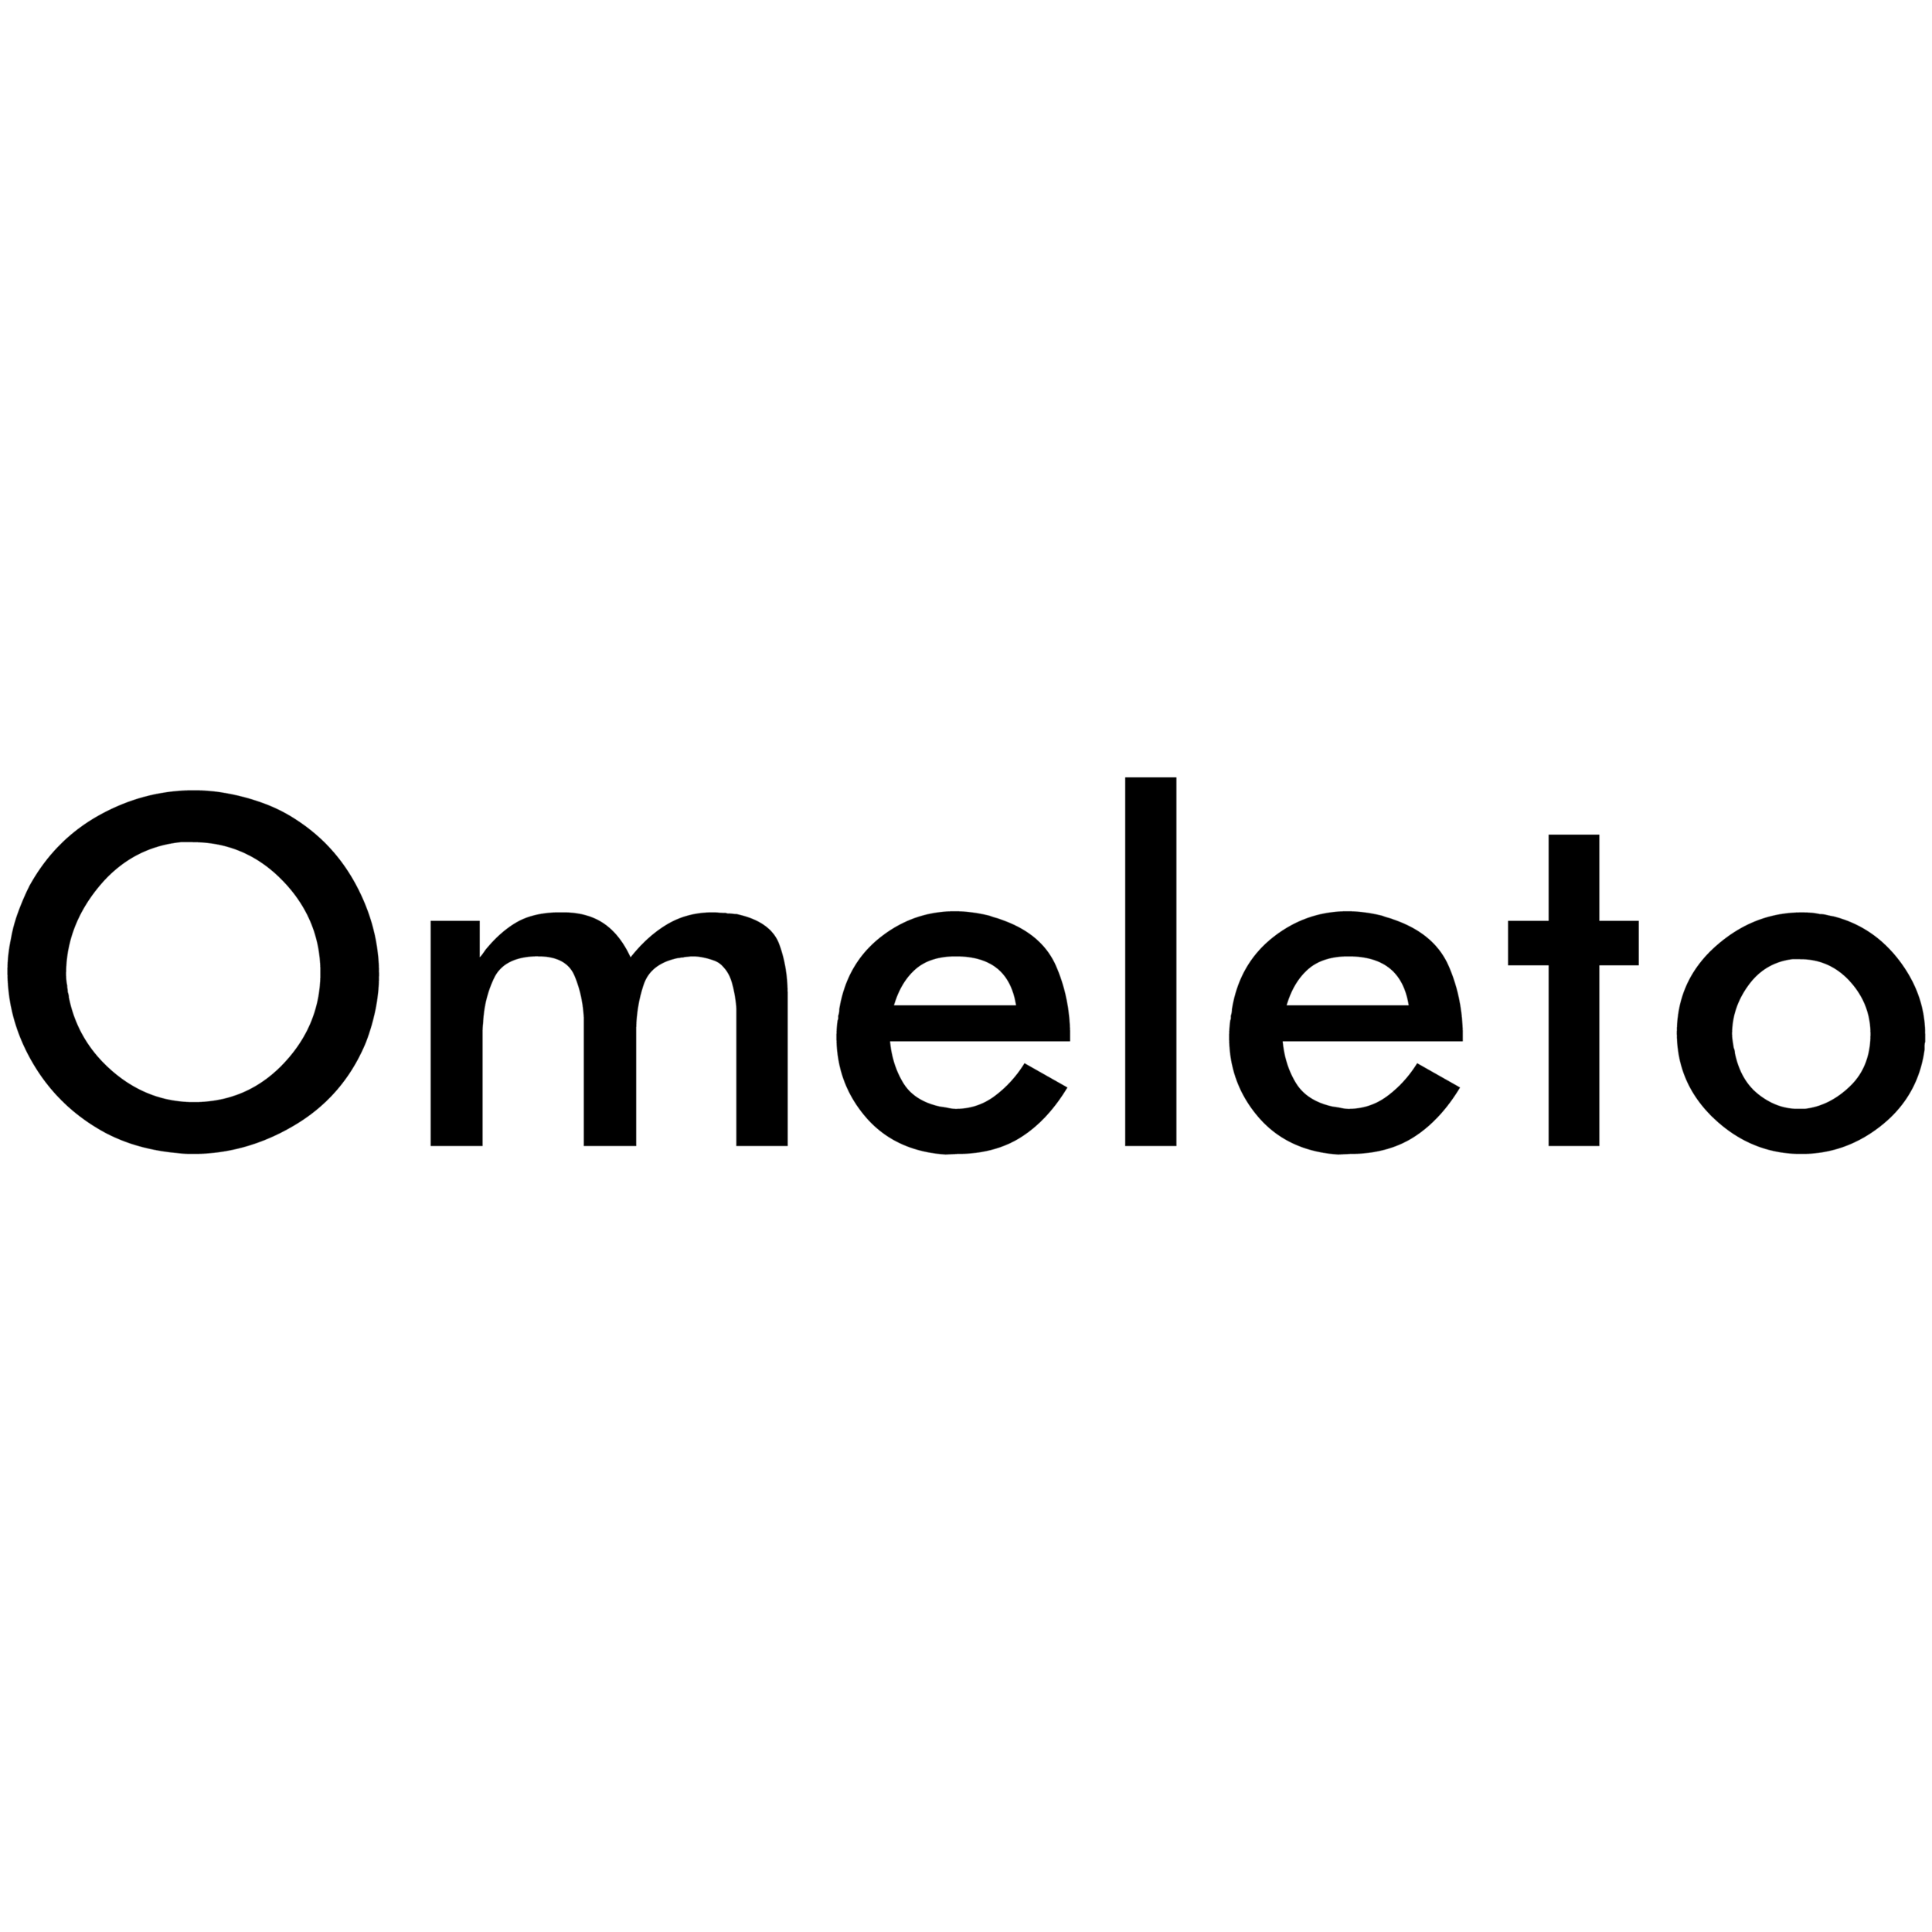 omeleto.png